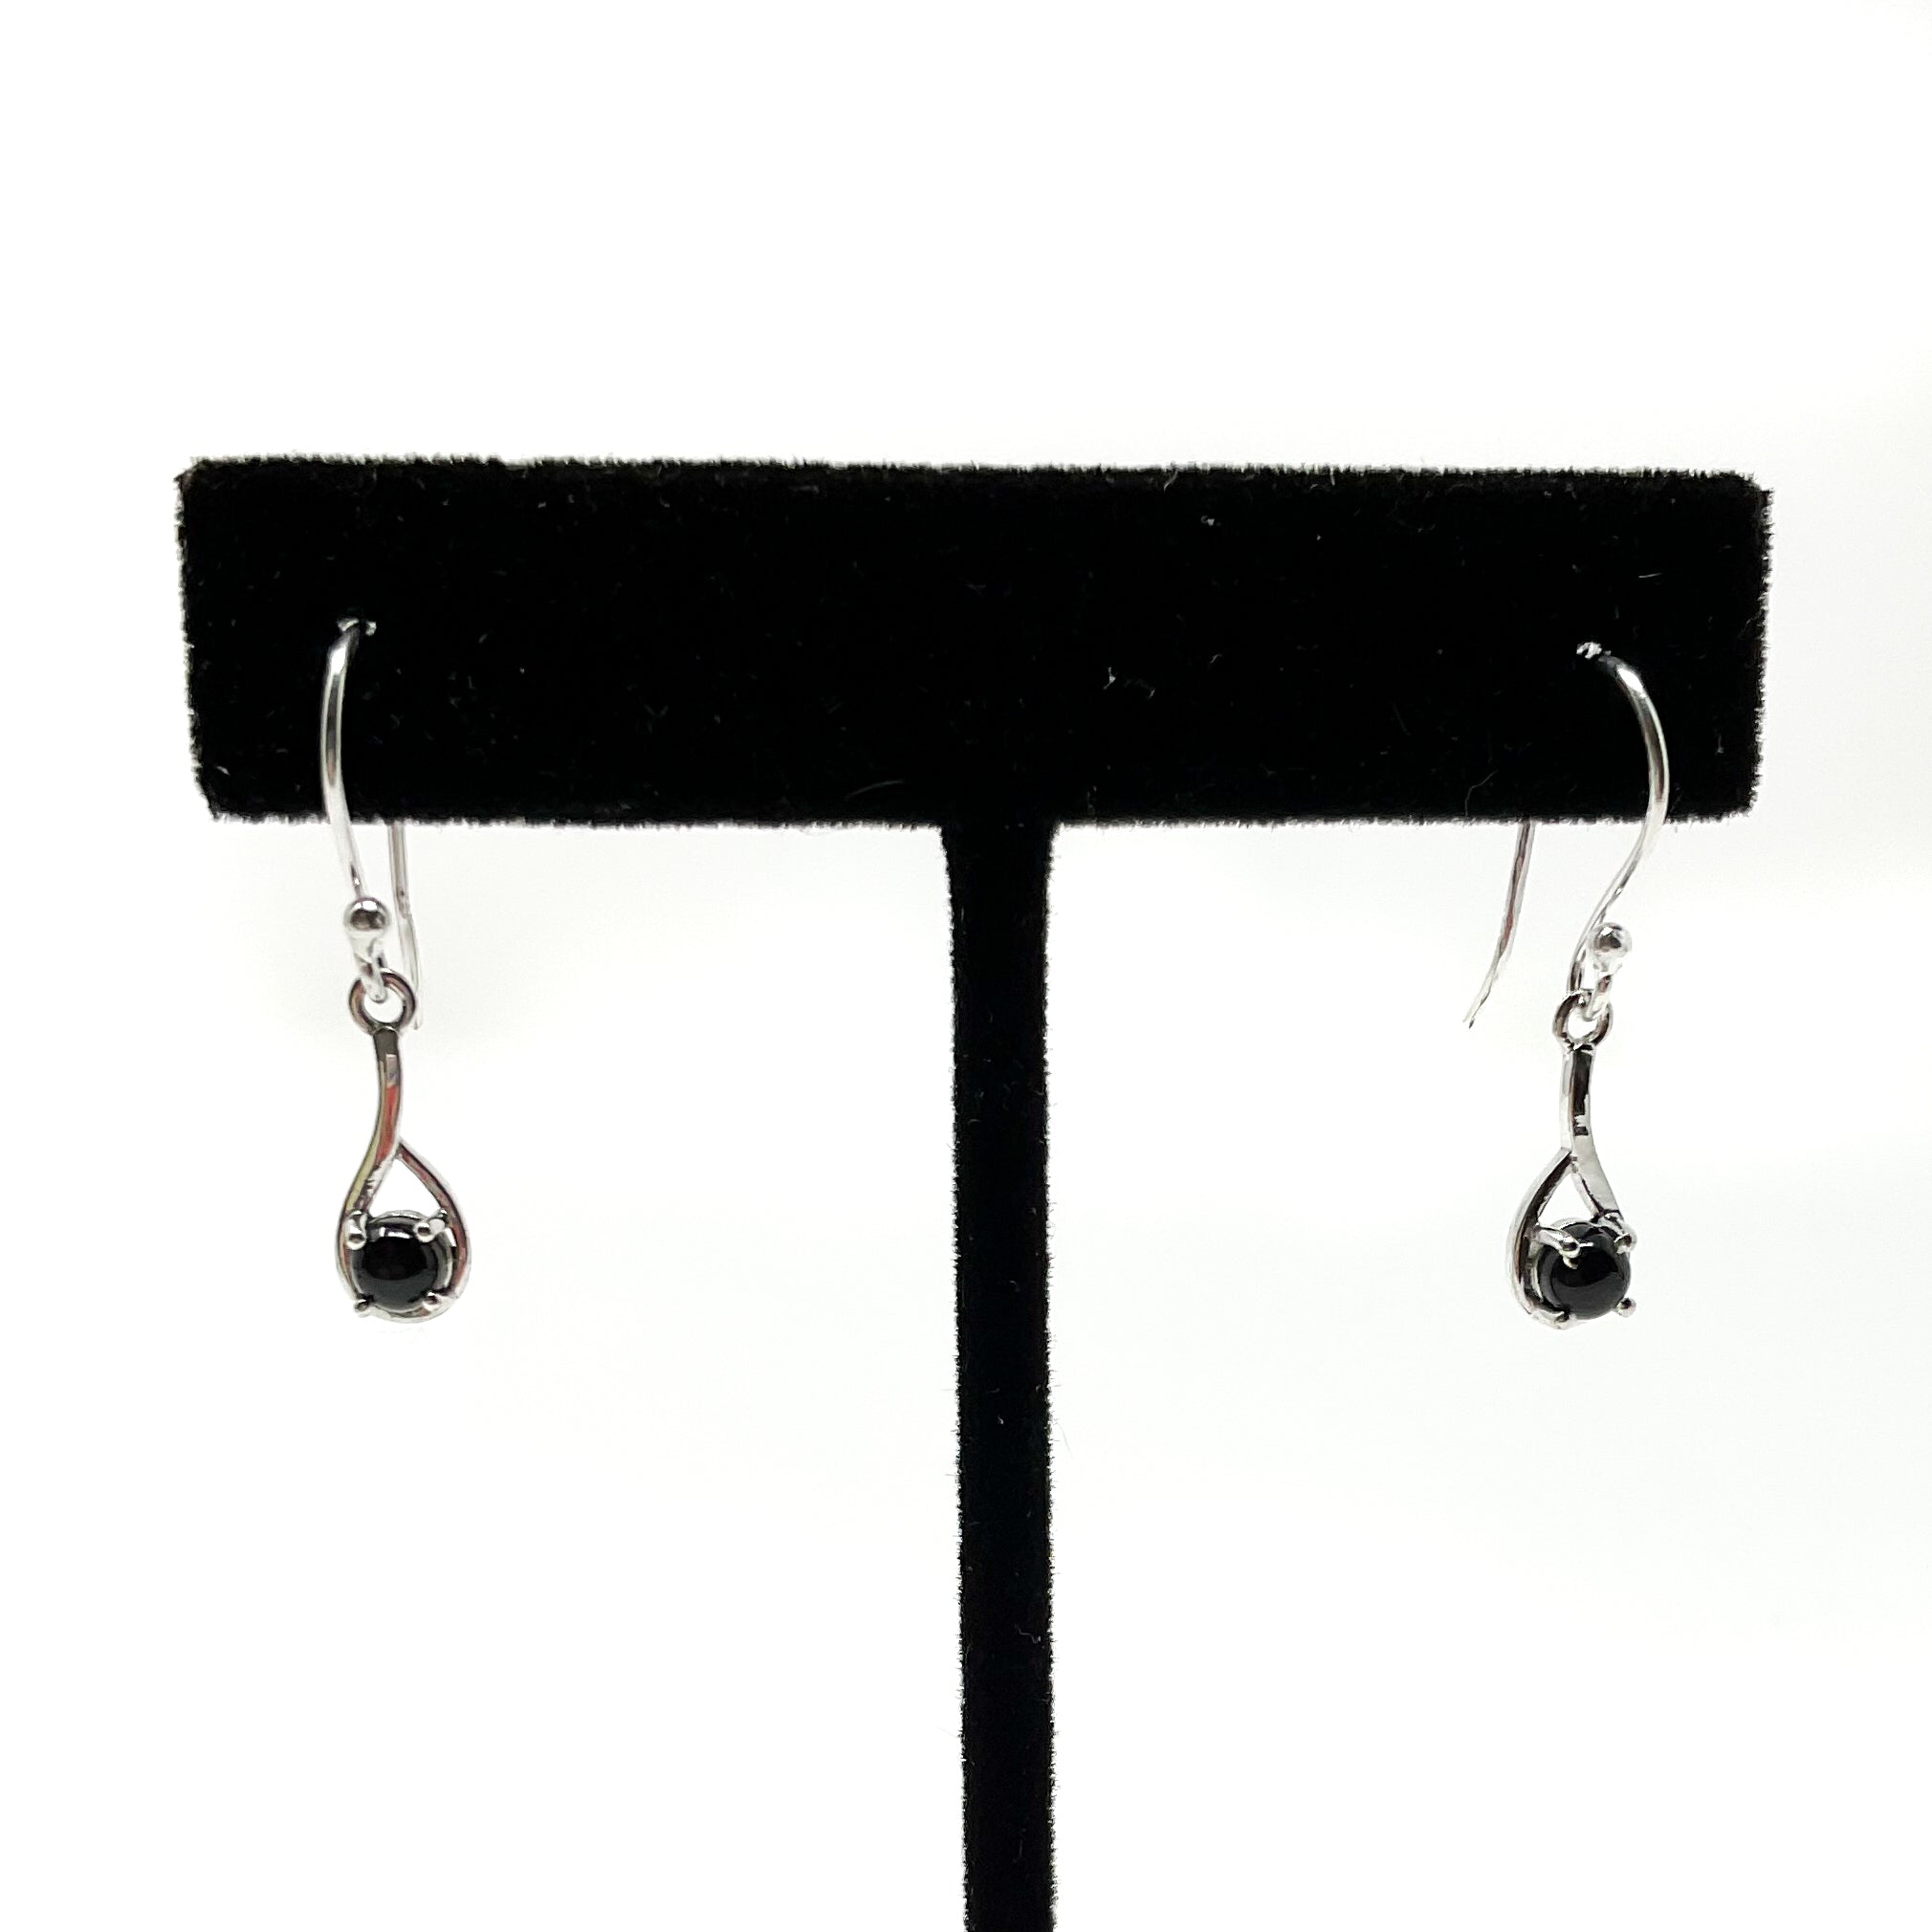 Sterling Silver Black Onyx Earrings